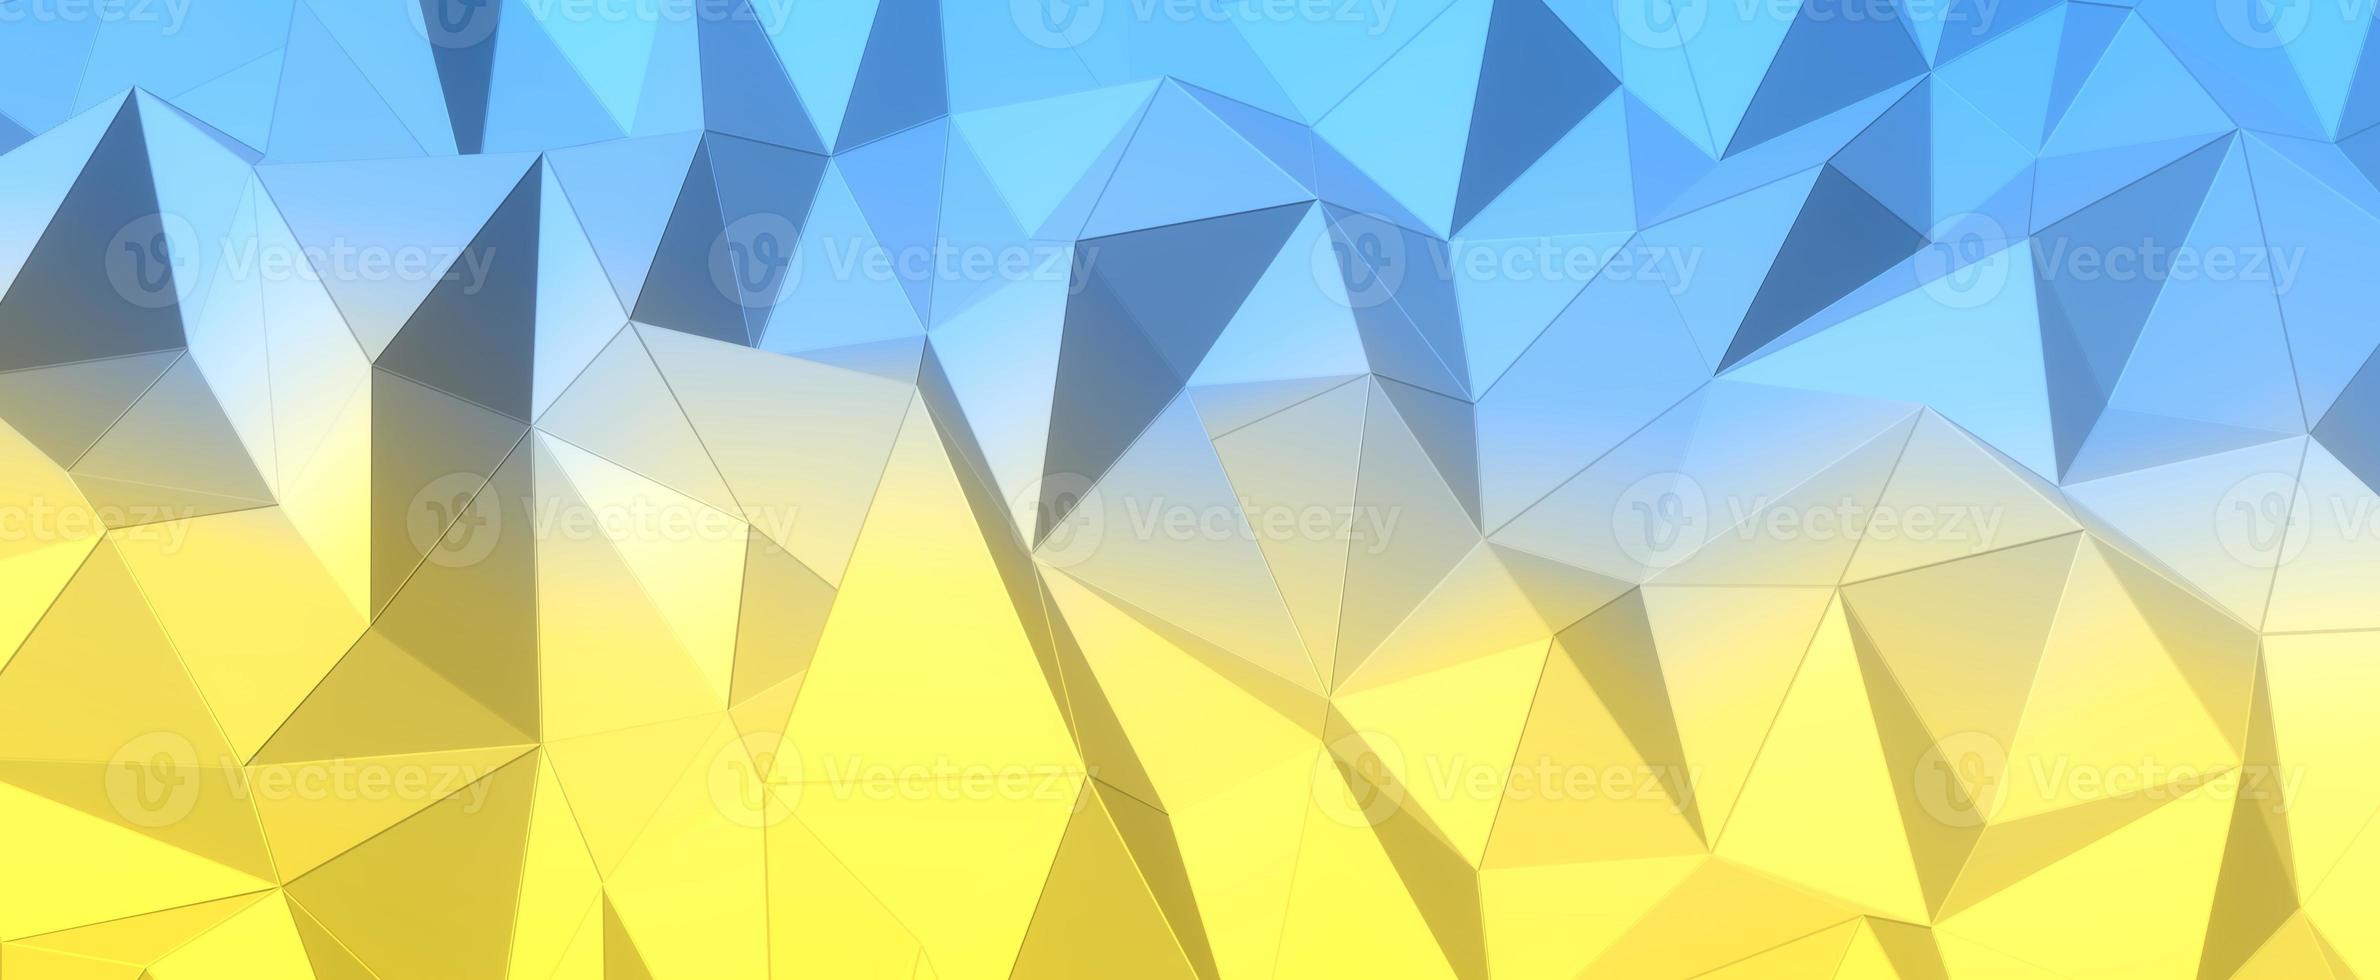 veelhoekige blauw gele achtergrond. abstracte kleuren van de Oekraïense vlag. geometrische heuvels met 3D render mesh. driehoekige digitale texturen gestapeld in creatieve formaties met een futuristisch interieur foto